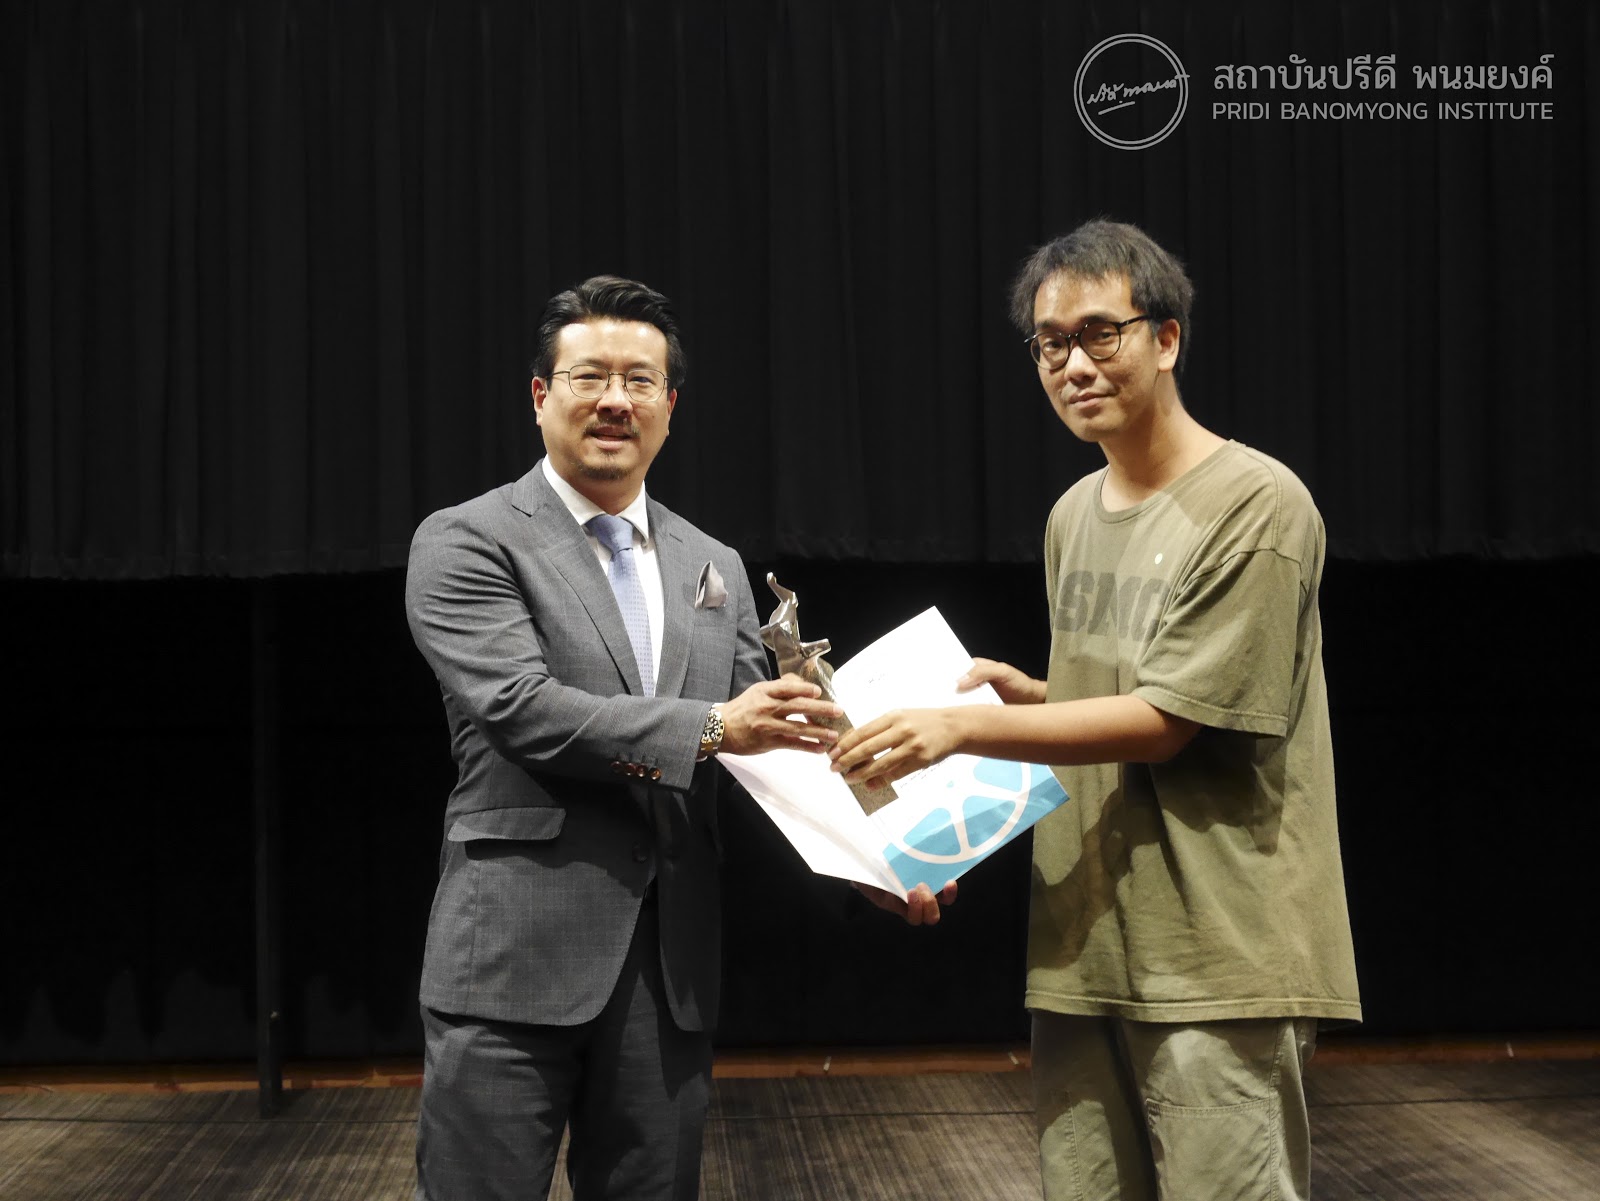 นายปรีดิวิชญ์ พนมยงค์ เป็นตัวแทนทายาทนายปรีดี พนมยงค์ มอบรางวัลช้างเผือก แก่ผู้ชนะการประกวดหนังสั้น ในเทศกาลภาพยนต์สั้นครั้งที่ 24 (24th Thai Short Film and Video Festival)